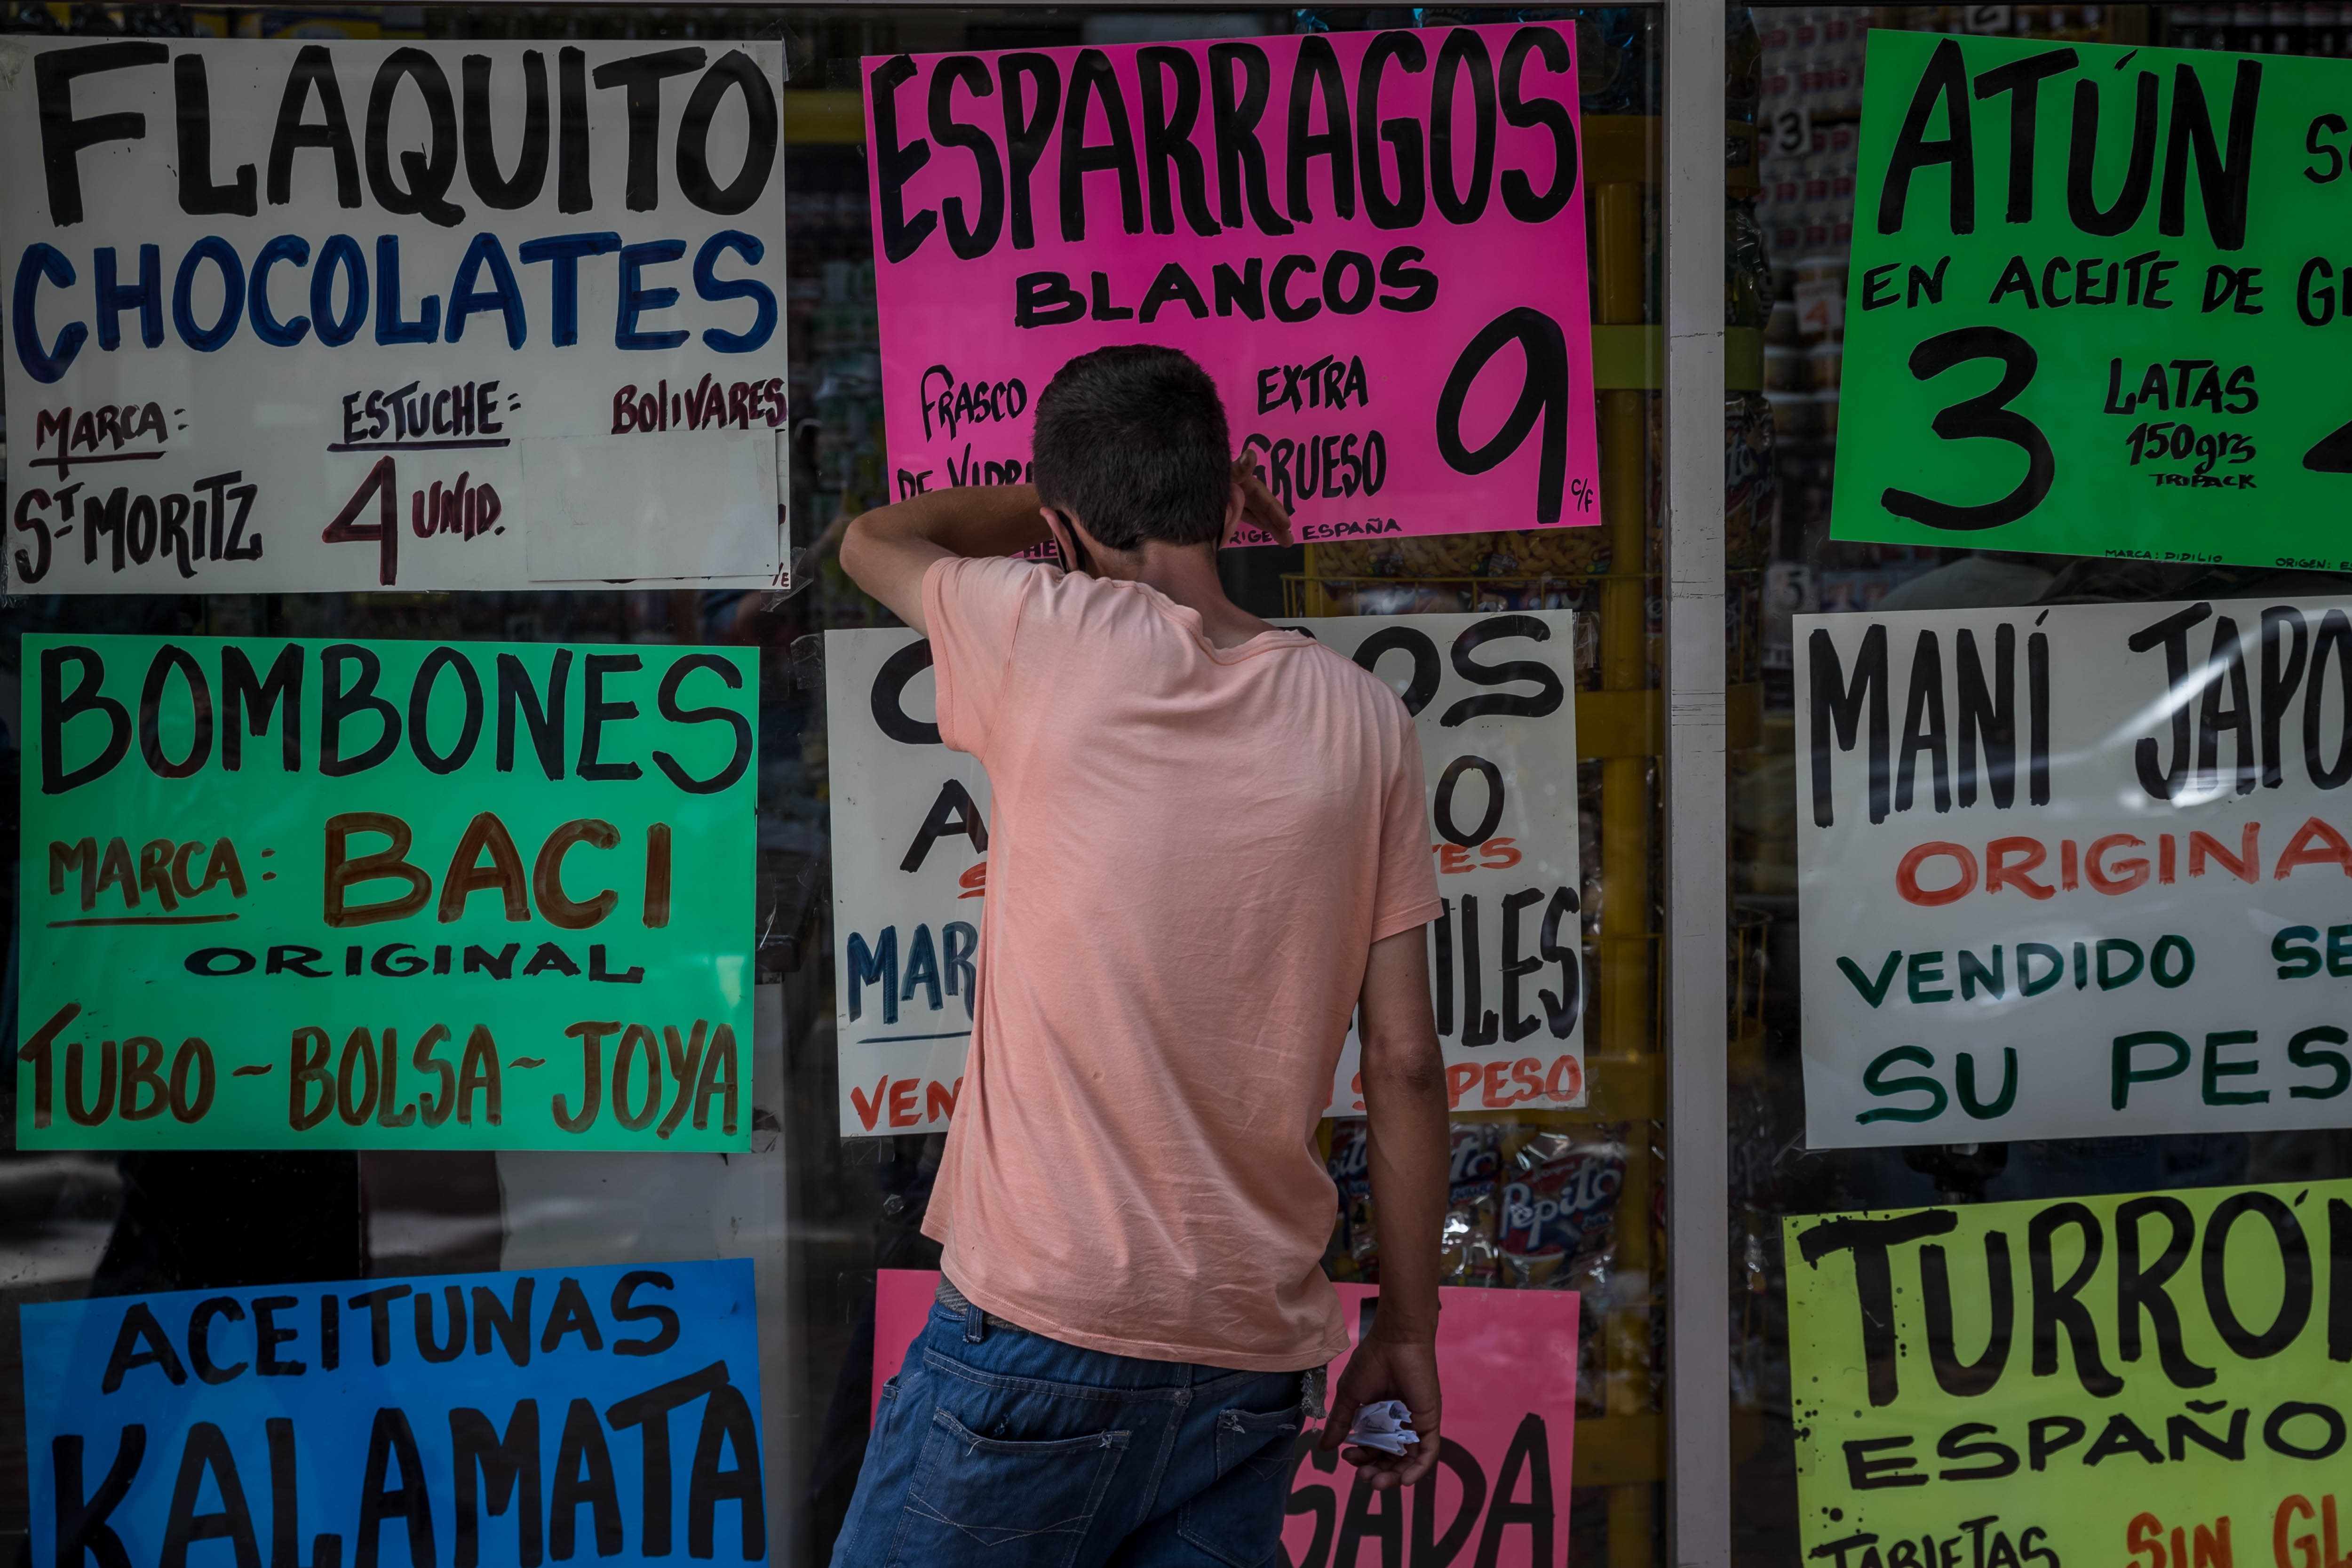 Al venezolano le sale más caro pagar en bolívares que en dólares